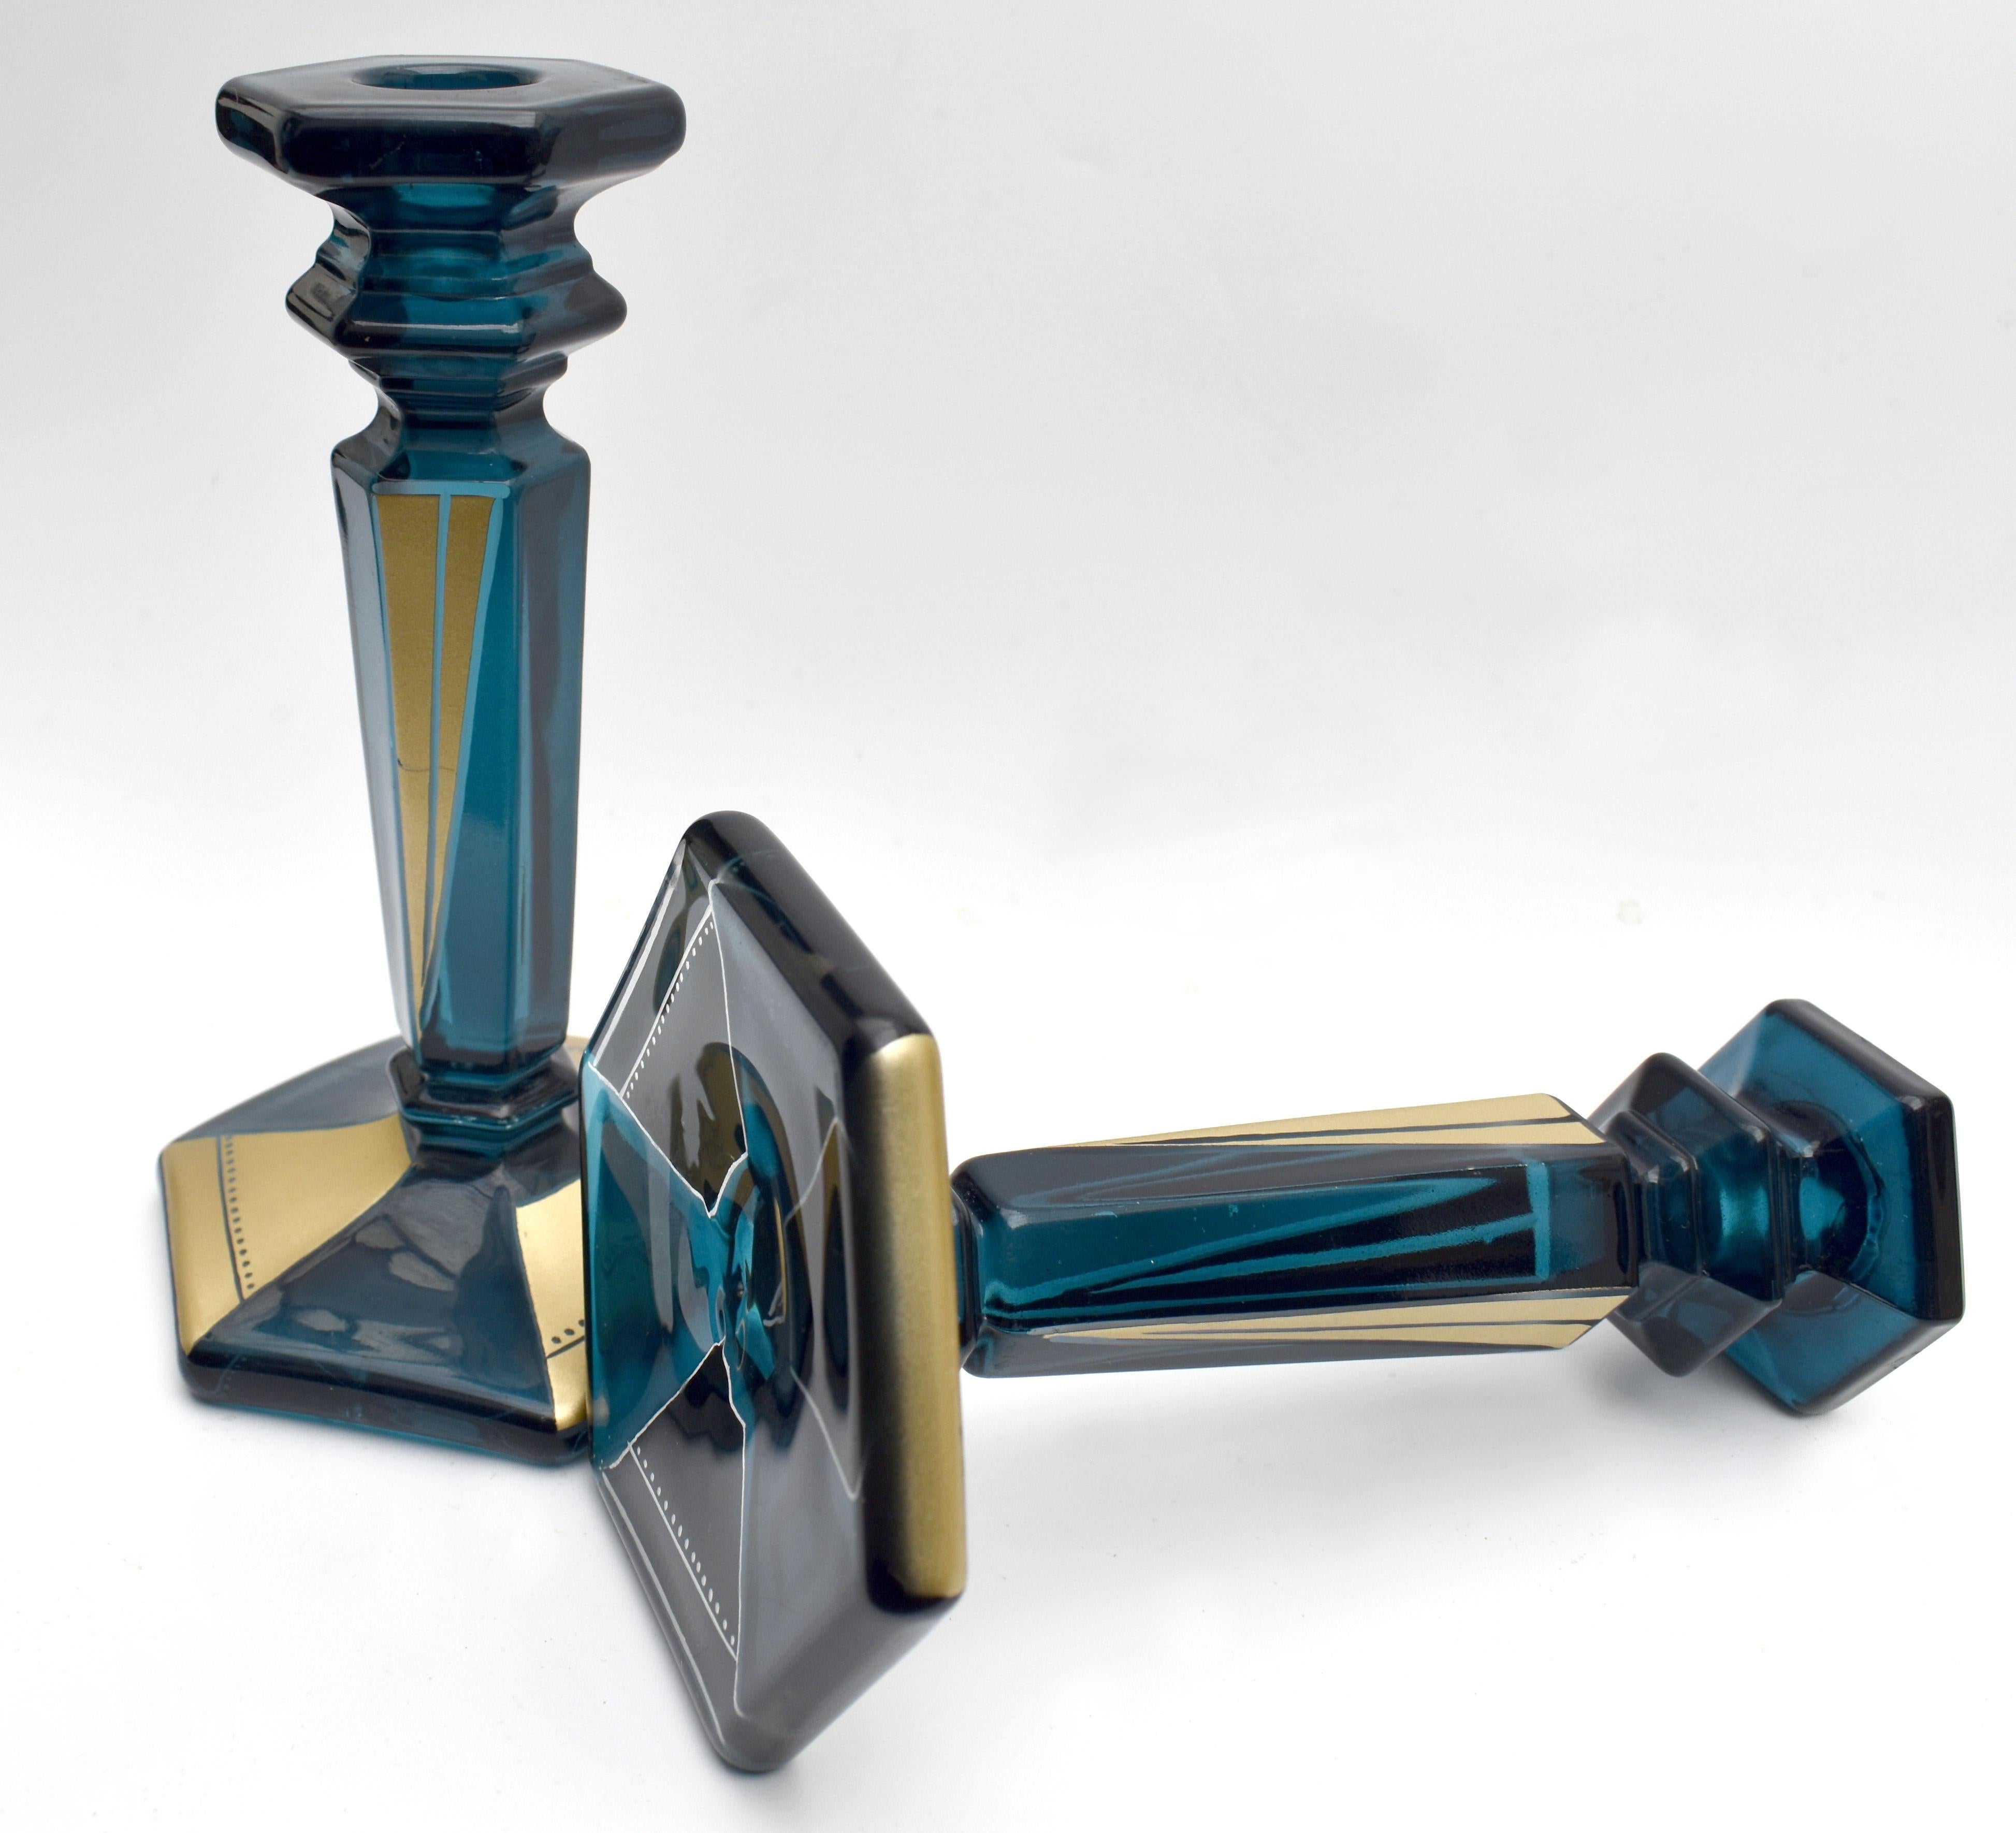 Sehr stilvolles und gut dimensioniertes Paar passender Art-Déco-Kerzenständer aus den 1930er Jahren. Schöner Zustand und ein Art-Déco-Liebhaber wird es zu schätzen wissen. Blaues Glas mit einer Überlagerung von Gold-Emaille geometrische Dekoration